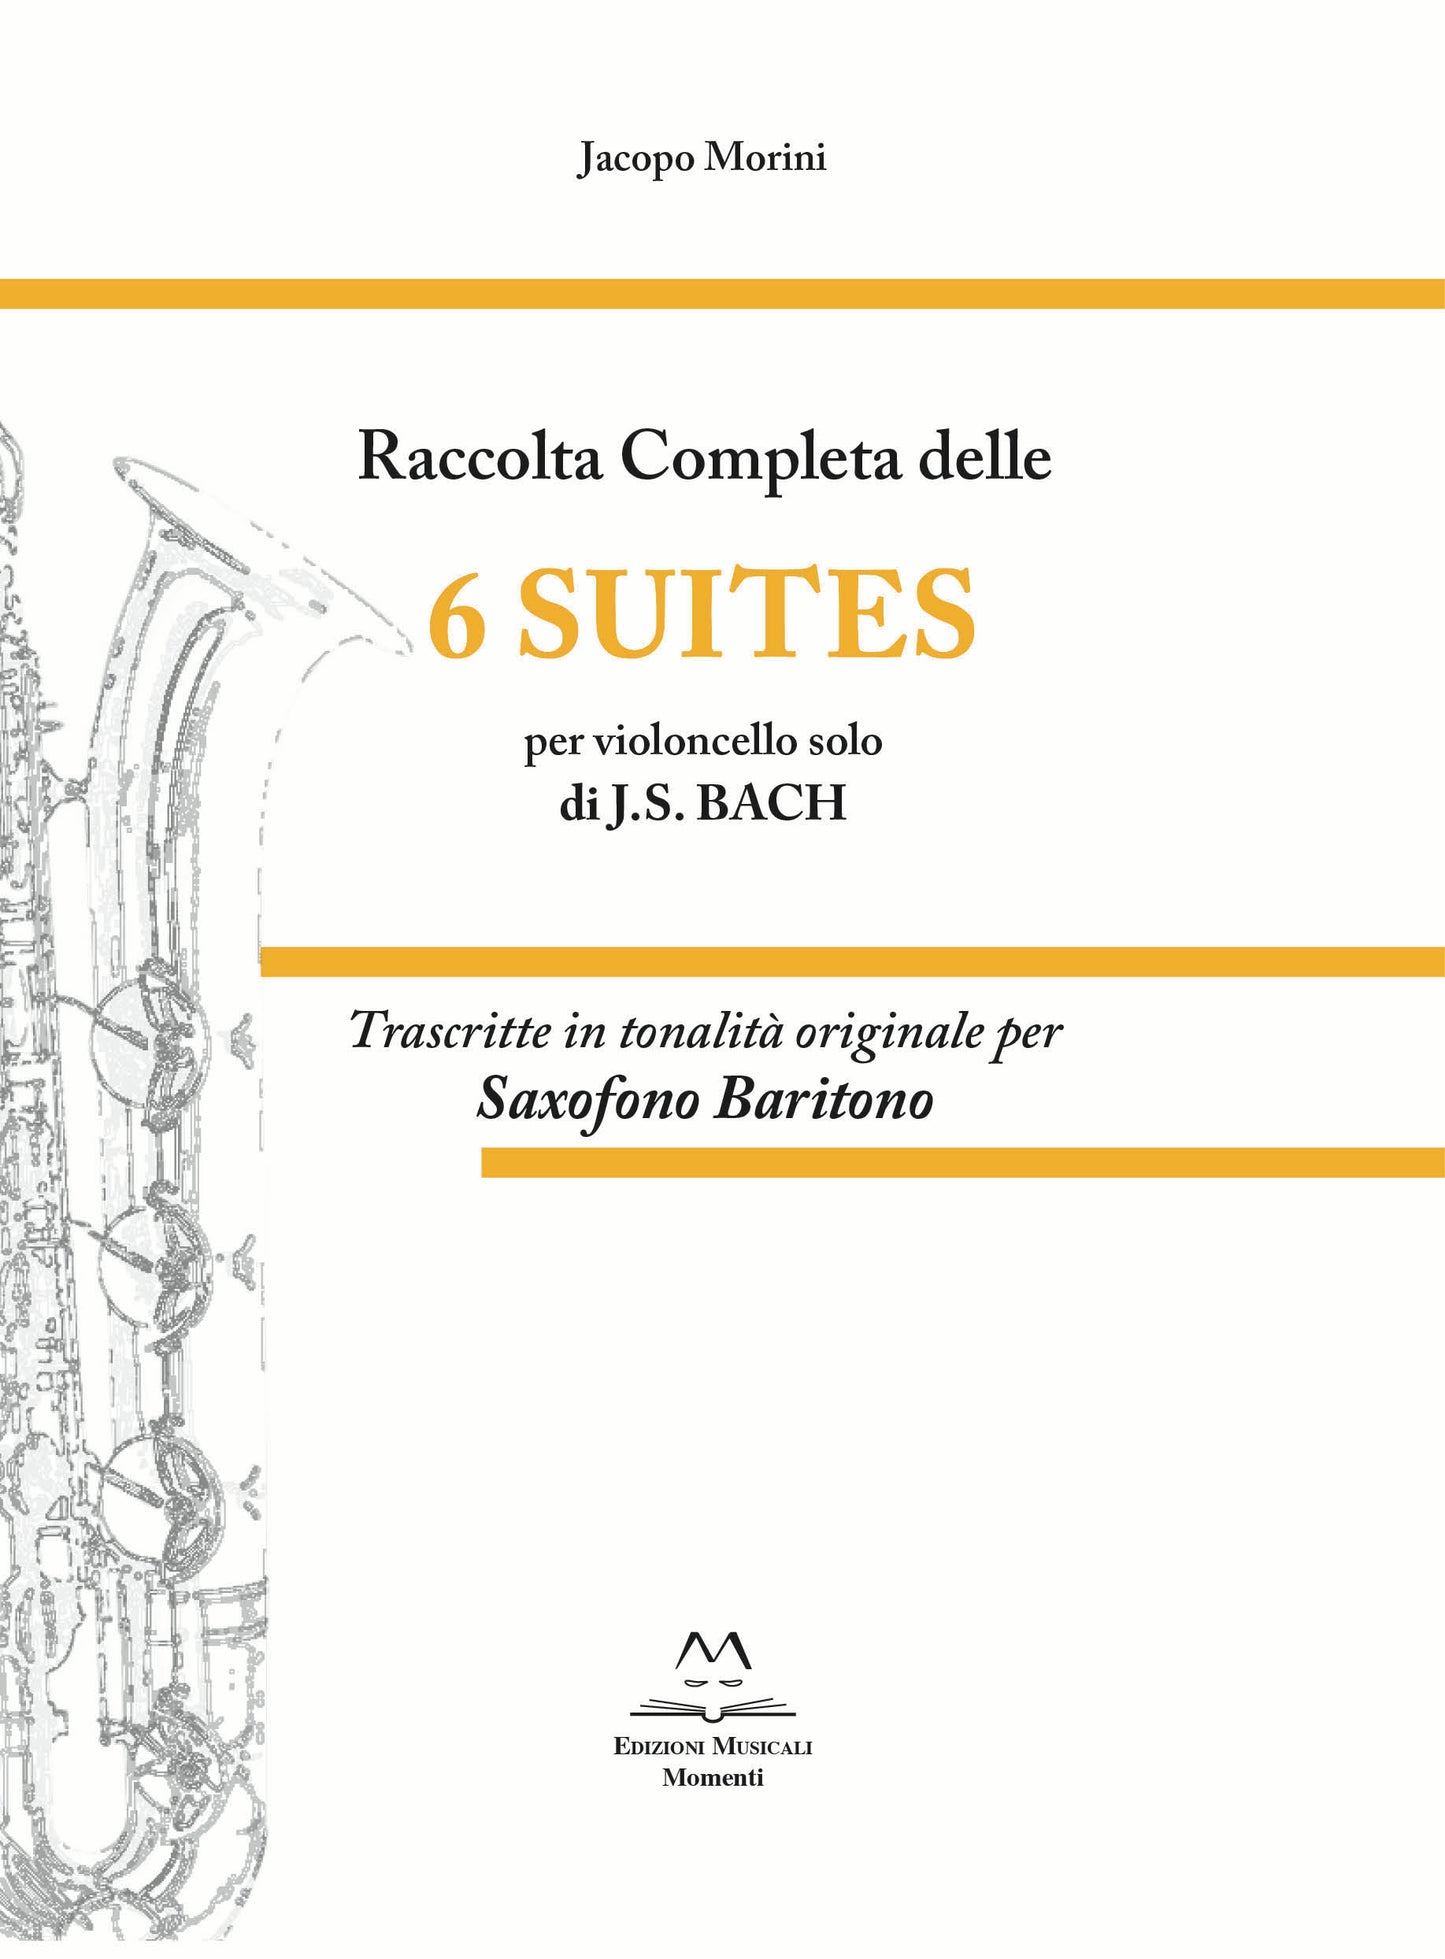 Raccolta completa delle 6 Suites per violoncello solo di J. S. Bach di Jacopo Morini